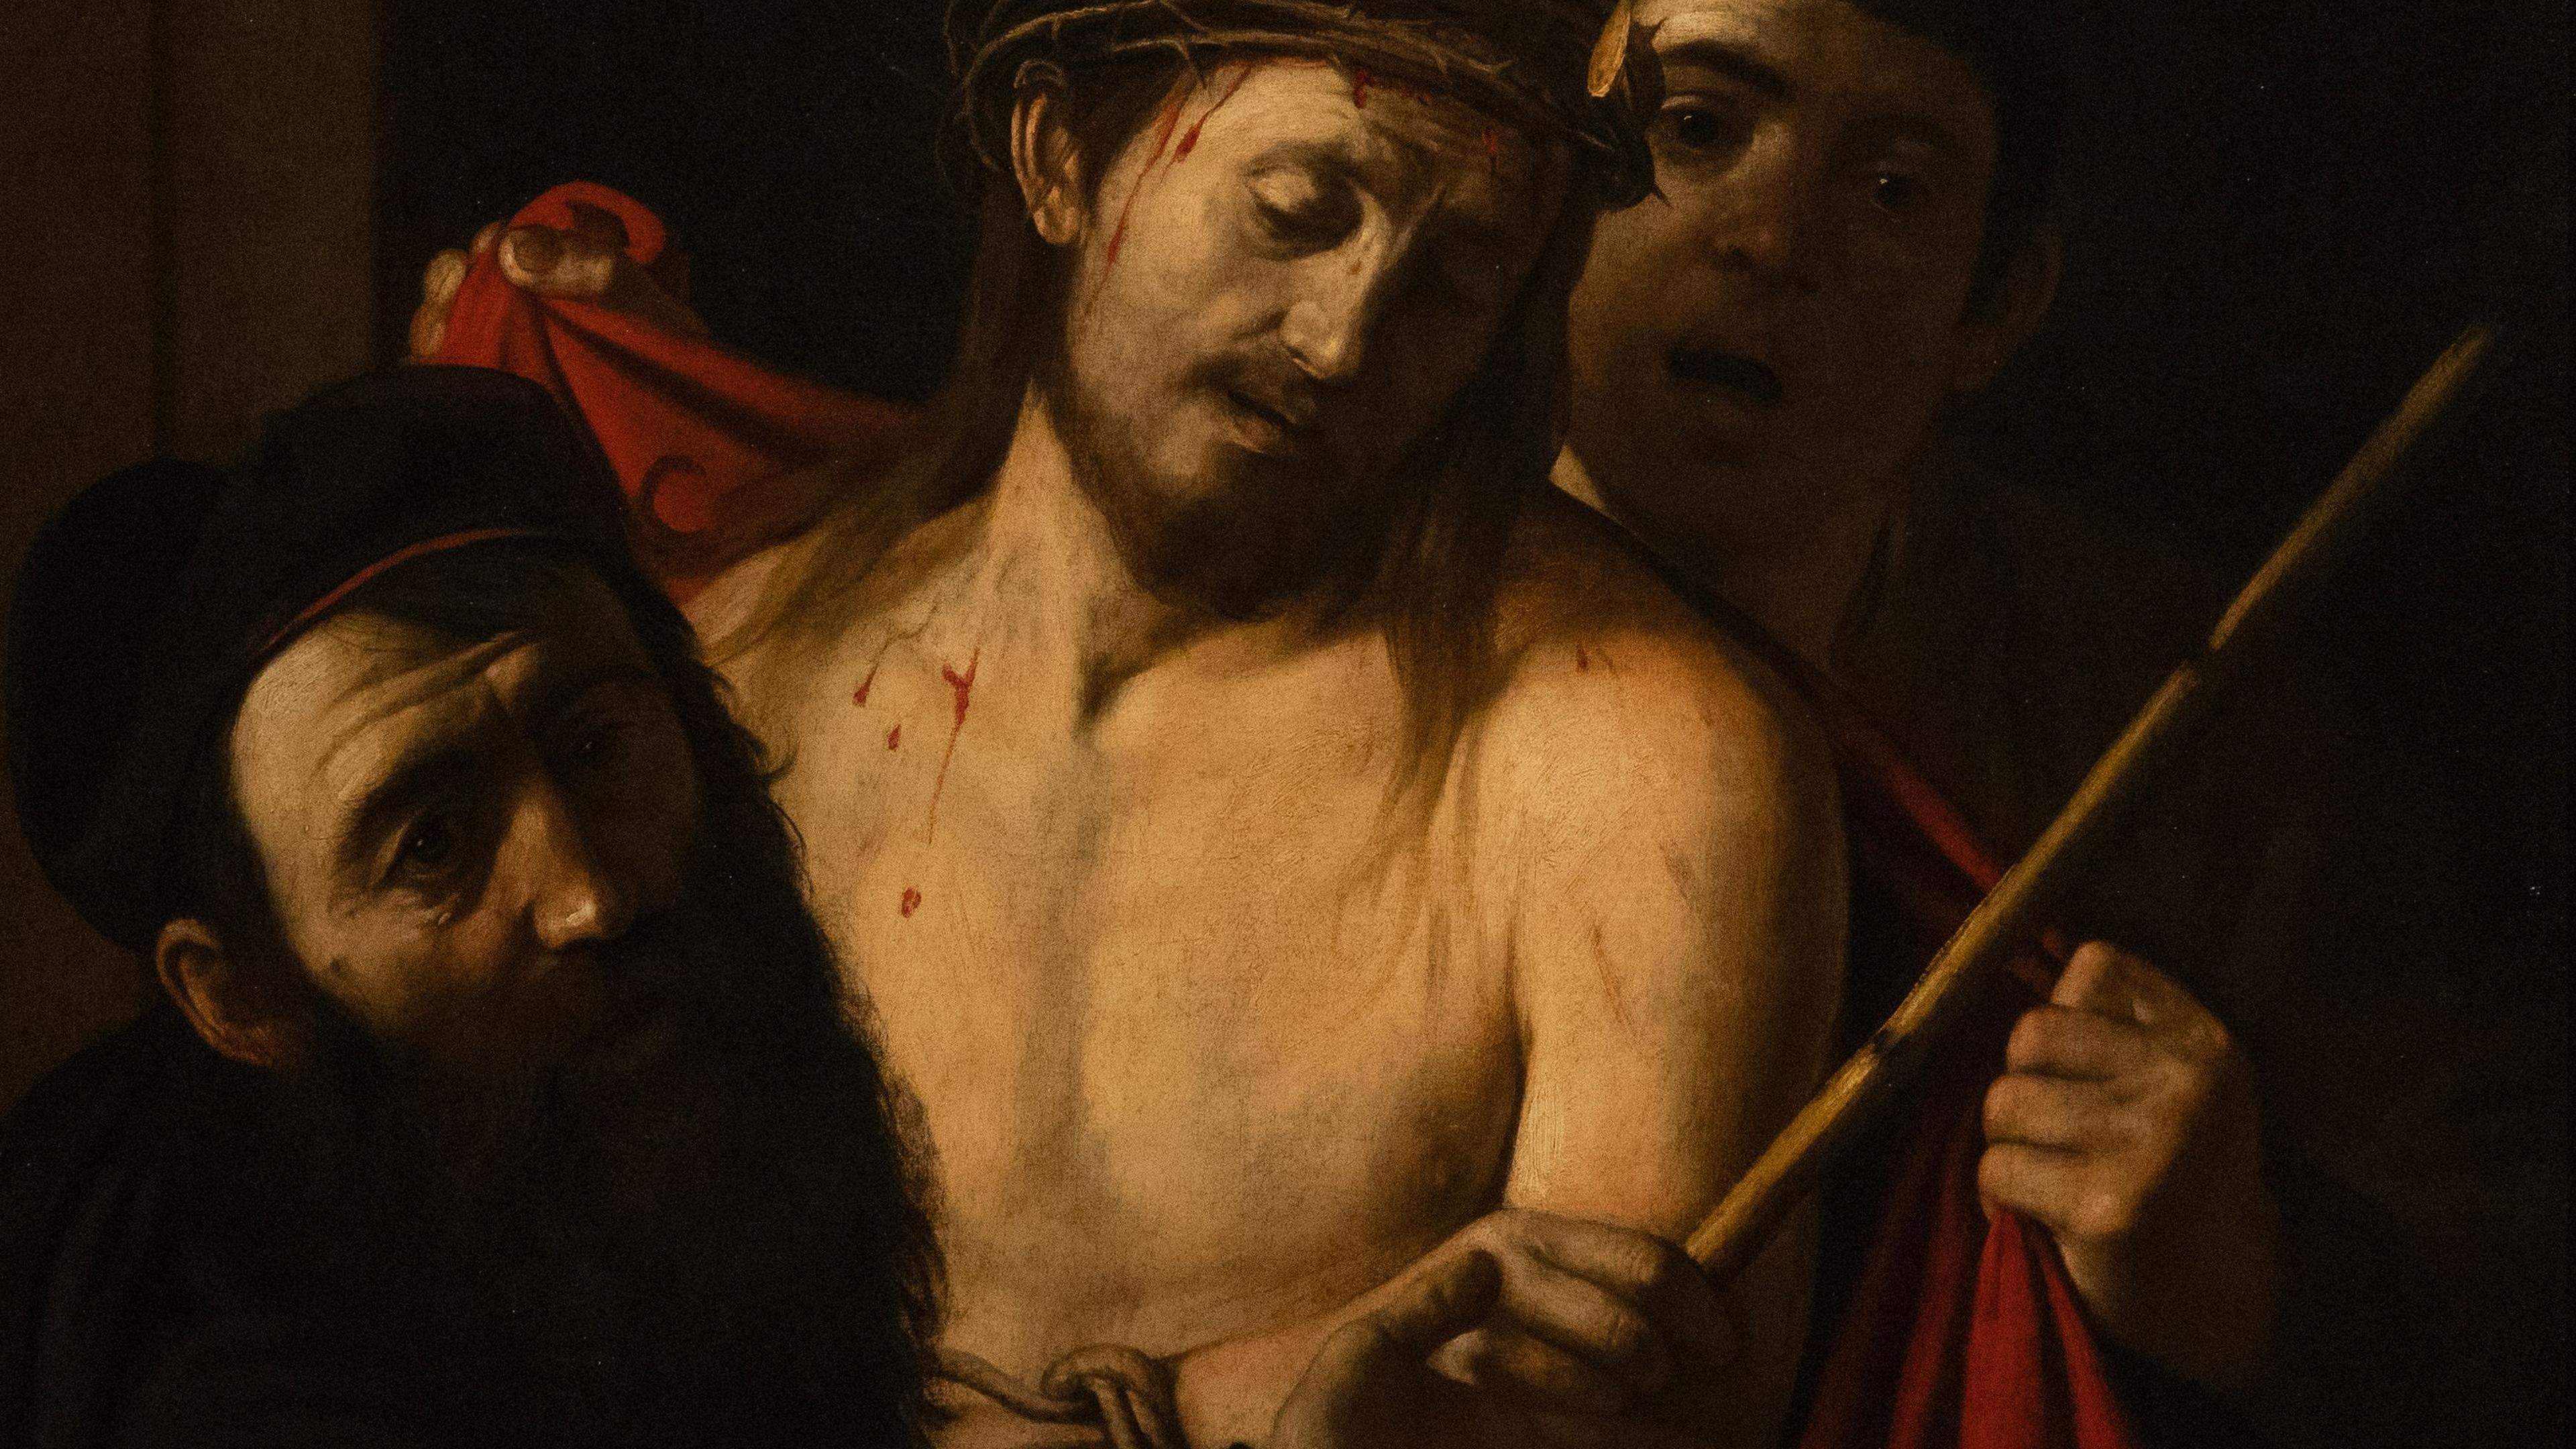 Das dunkle Gemälde mit dem Titel „Ecce Homo“, das einen blutüberströmten Jesus mit Dornenkrone kurz vor seiner Kreuzigung zeigt, ist eines von nur etwa 60 bekannten Werken des  italienischen Meisters Caravaggio.